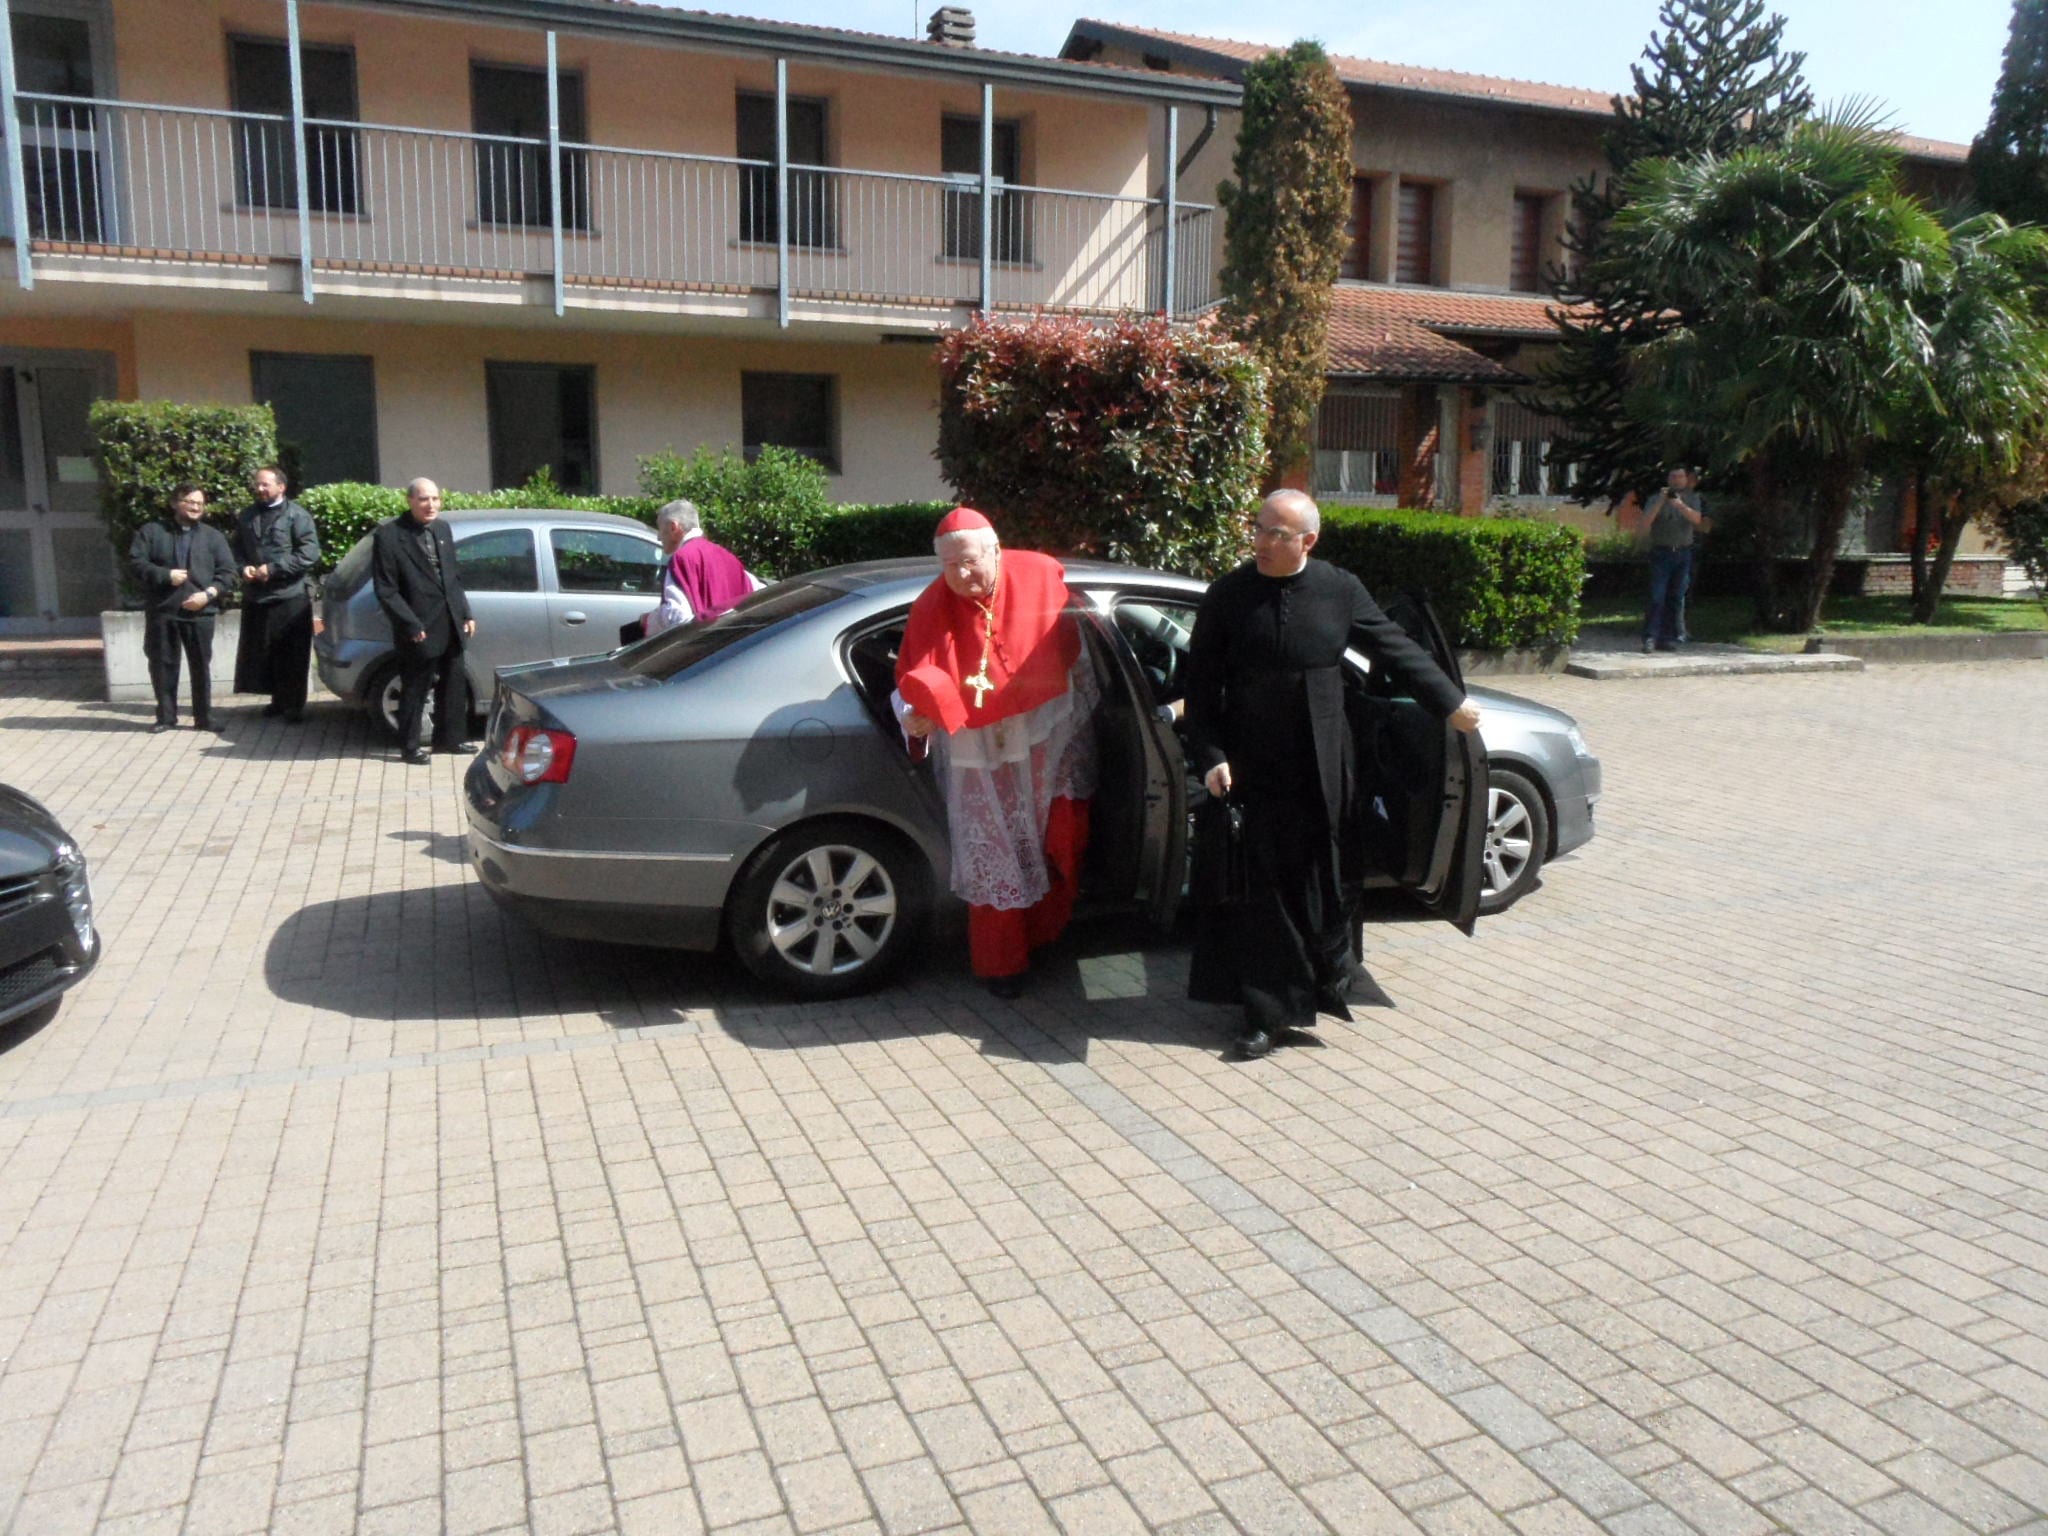 Il cardinale Scola per la prima volta a Saronno, in occasione del Trasporto